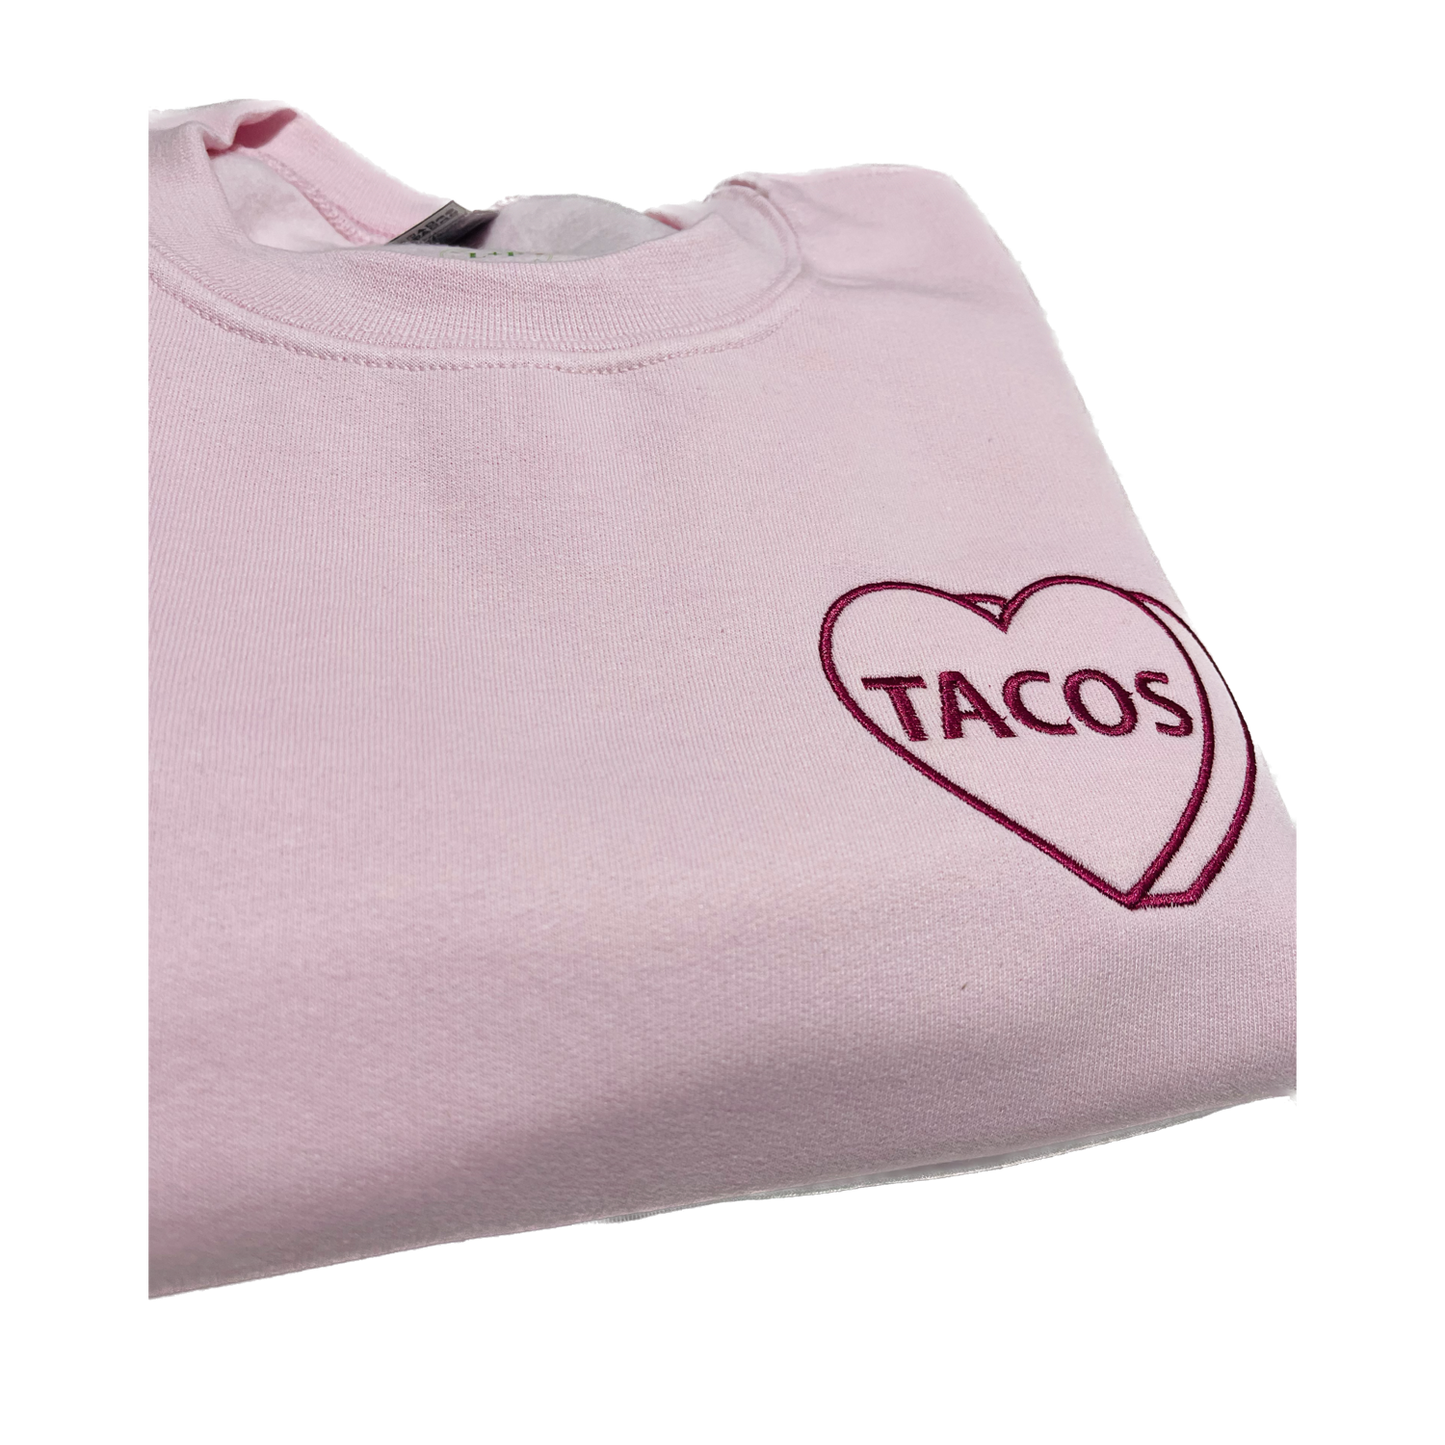 I Love Tacos